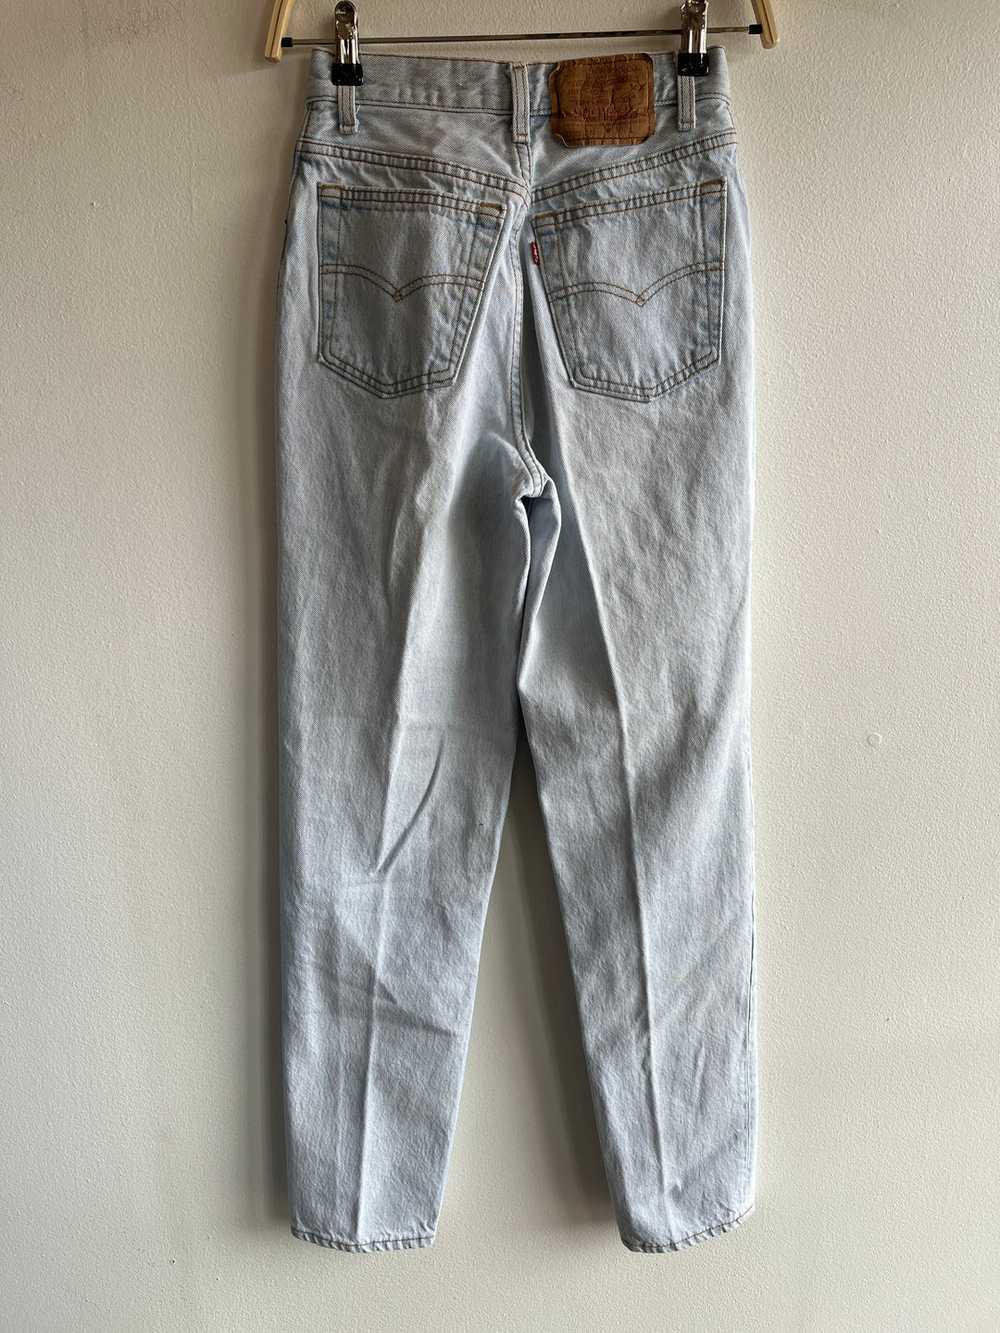 Vintage 1990’s Levi’s 501 Denim Jeans - image 4